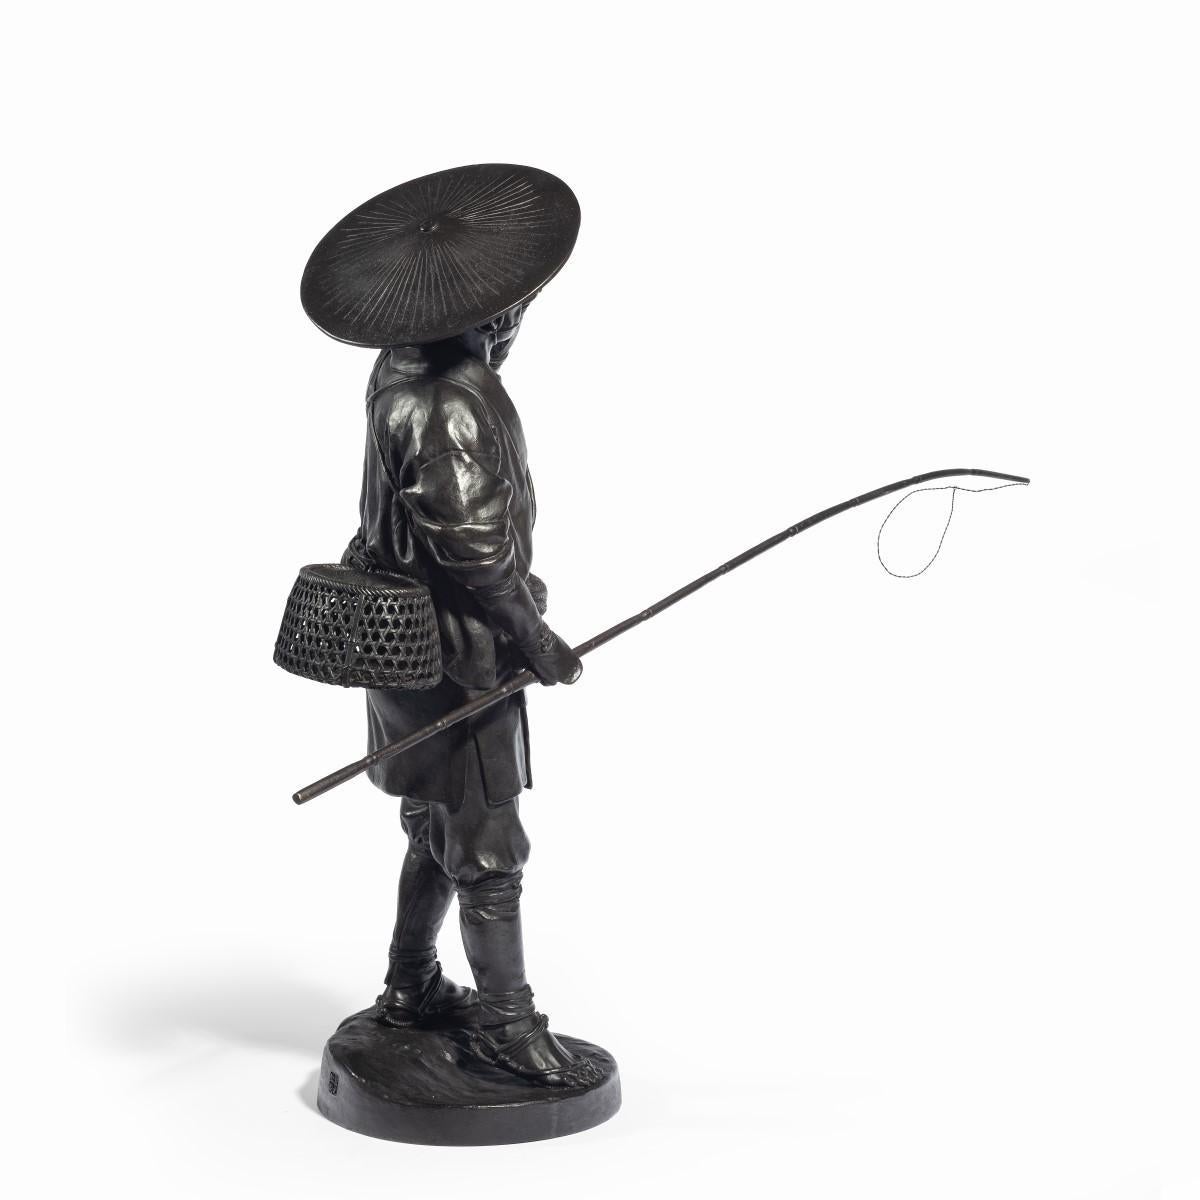 Eine Bronze aus der Meiji-Zeit, die einen Cricket-Fänger zeigt, der in der linken Hand eine Pfeife und in der rechten Hand einen langen Stab hält. Er trägt traditionelle Kleidung, einen breitkrempigen Hut und ein Gatter auf dem Rücken, signiert mit